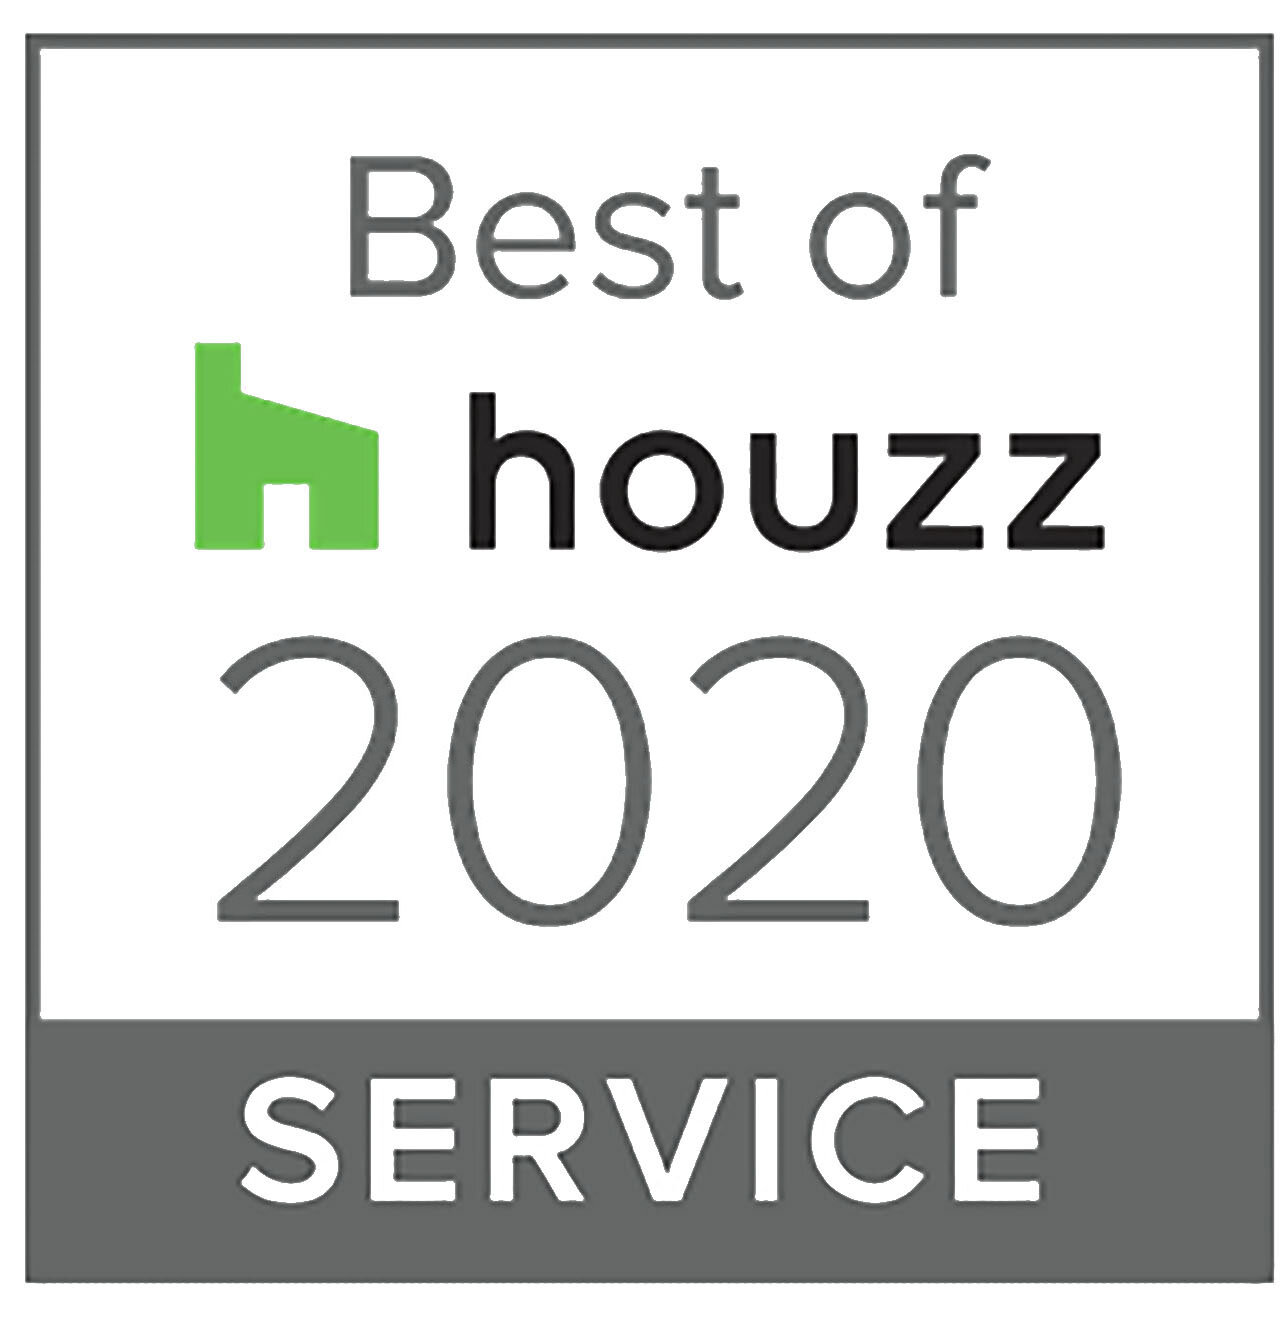 best-of-houzz-2020-logo-service-a.jpg